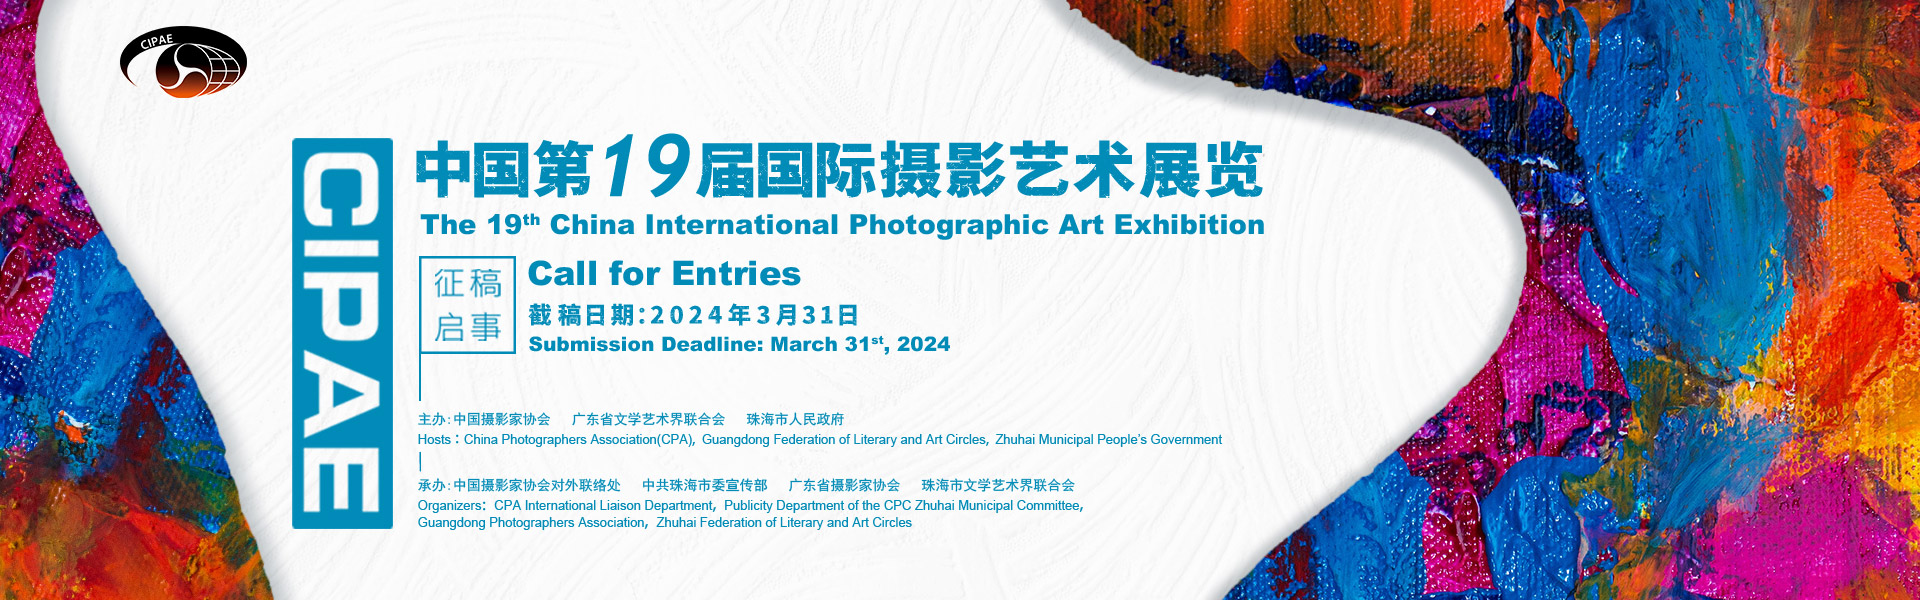 中国第19届国际摄影艺术展览